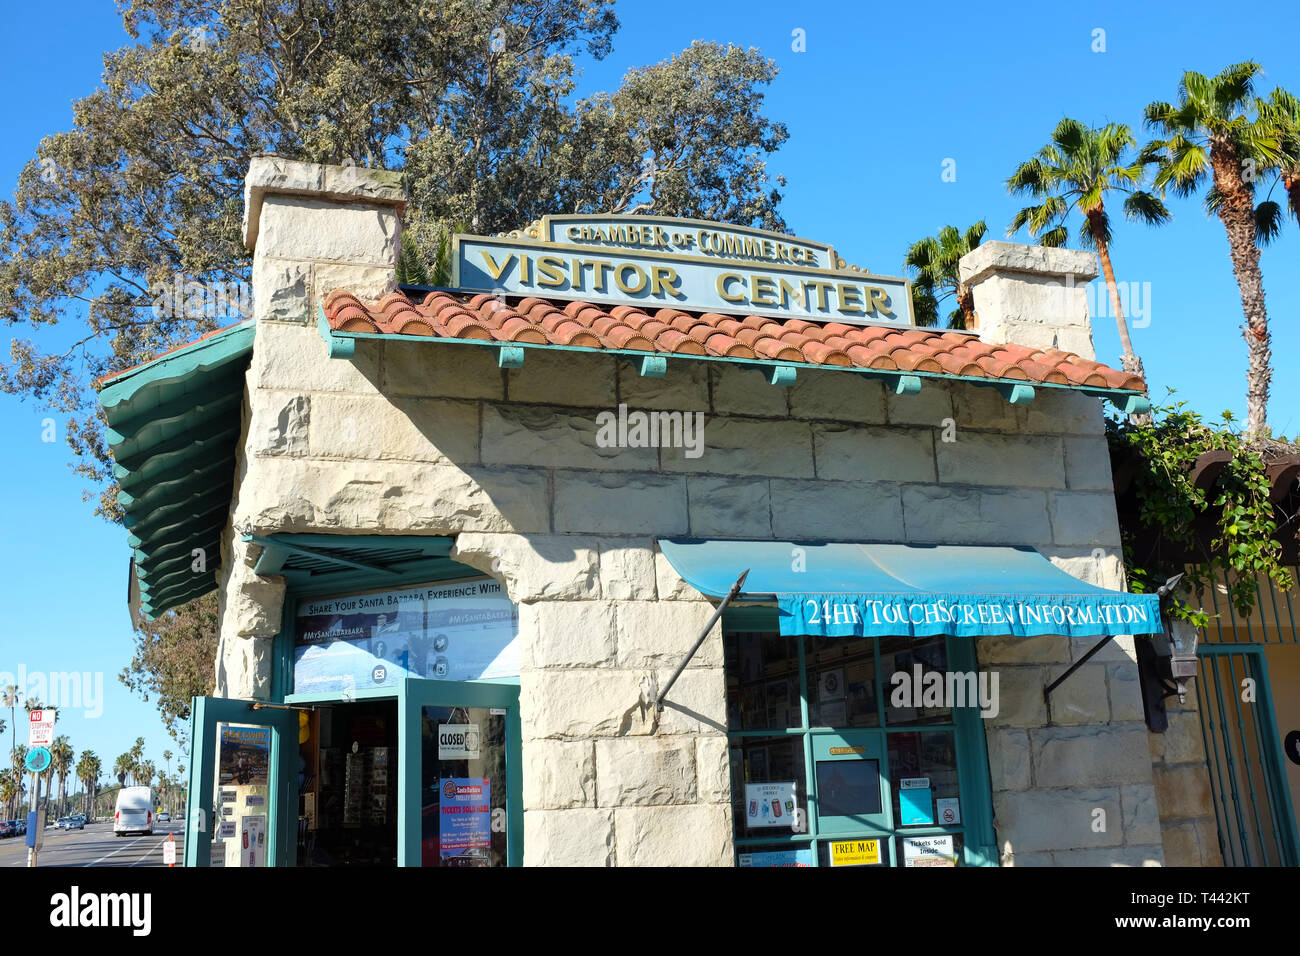 SANTA BARBARA, California - 12 Aprile 2019: Santa Barbara Camera di Commercio Visitor Center si trova sul lungomare un blocco da Stearns Whar Foto Stock